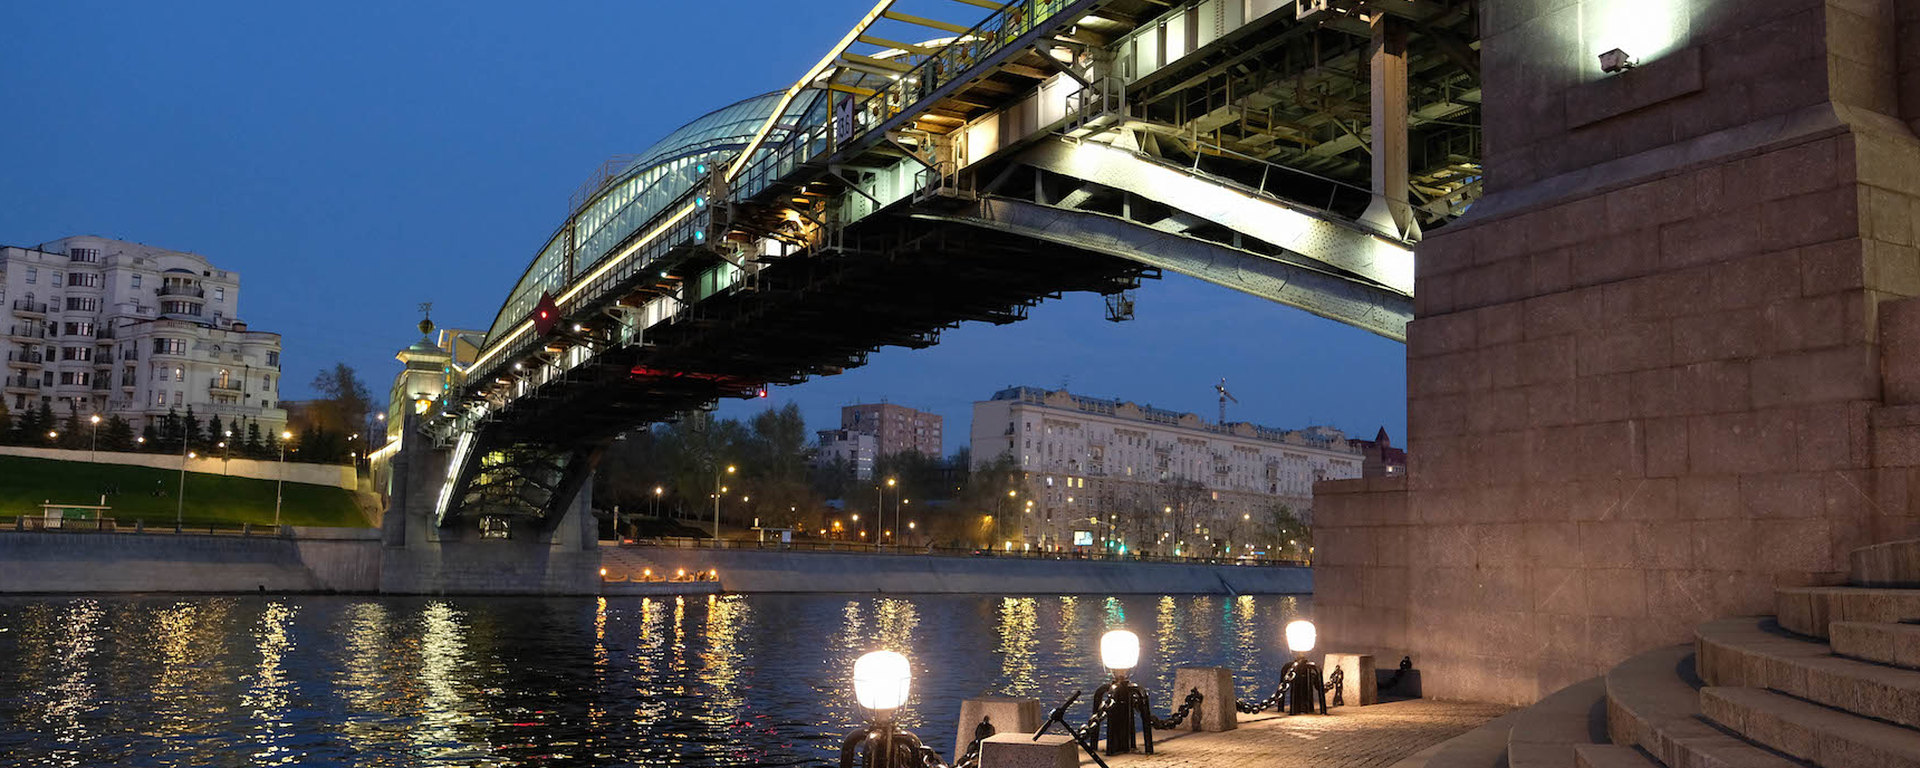 краснолужский мост в москве